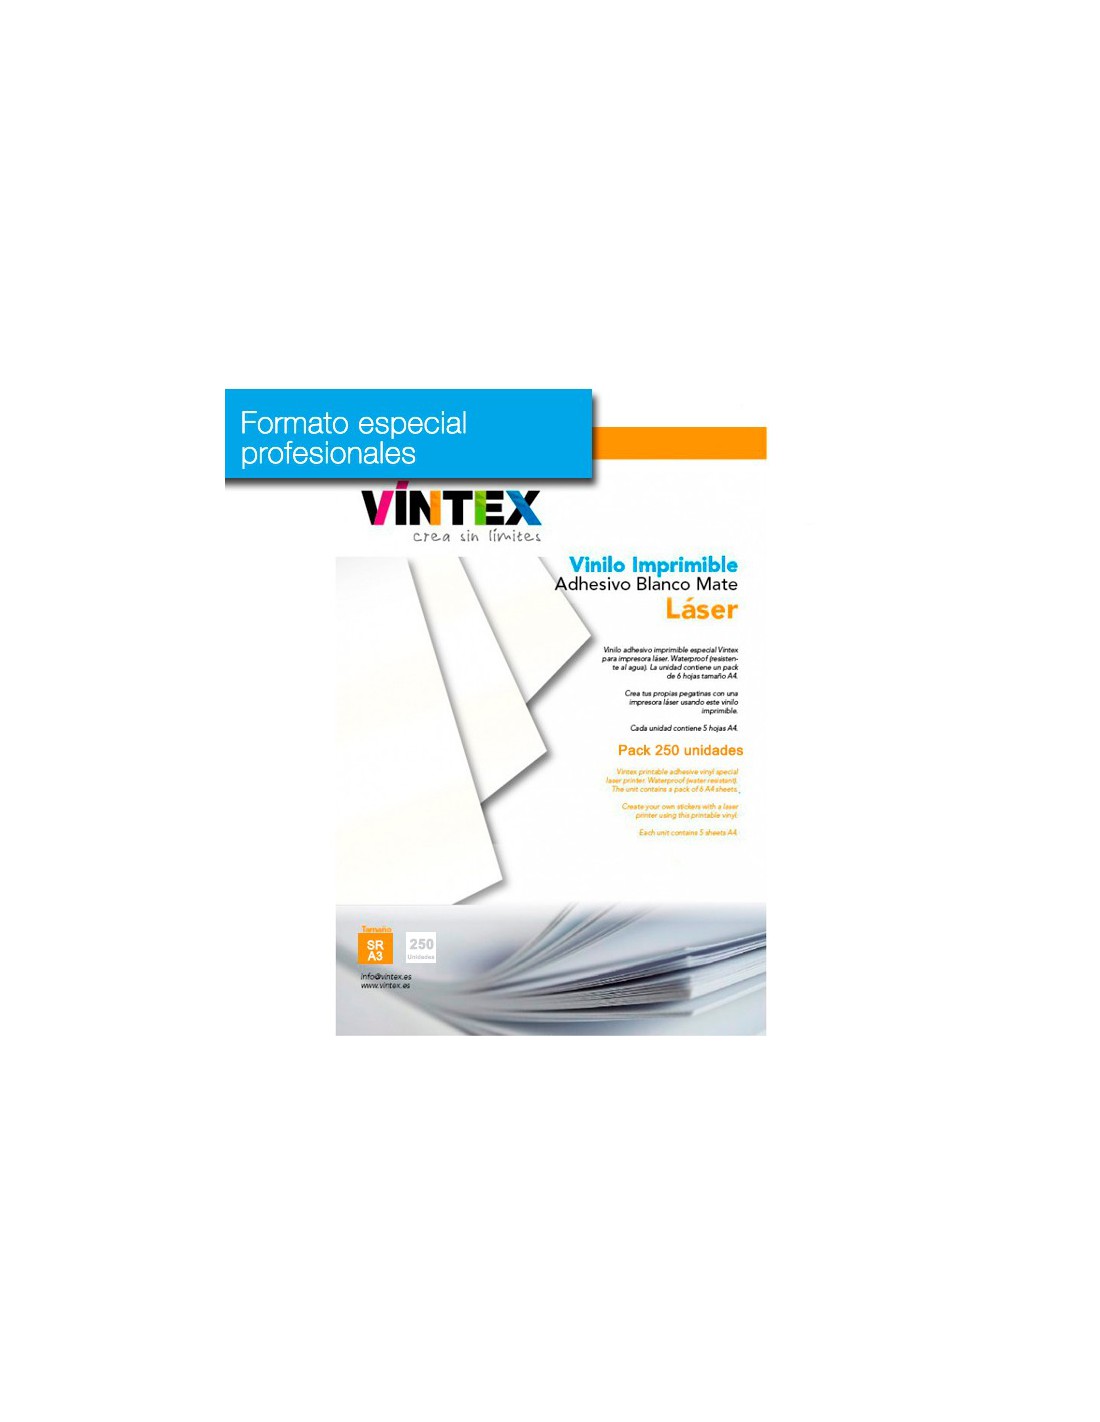 Vinilo textil imprimible Vintex 